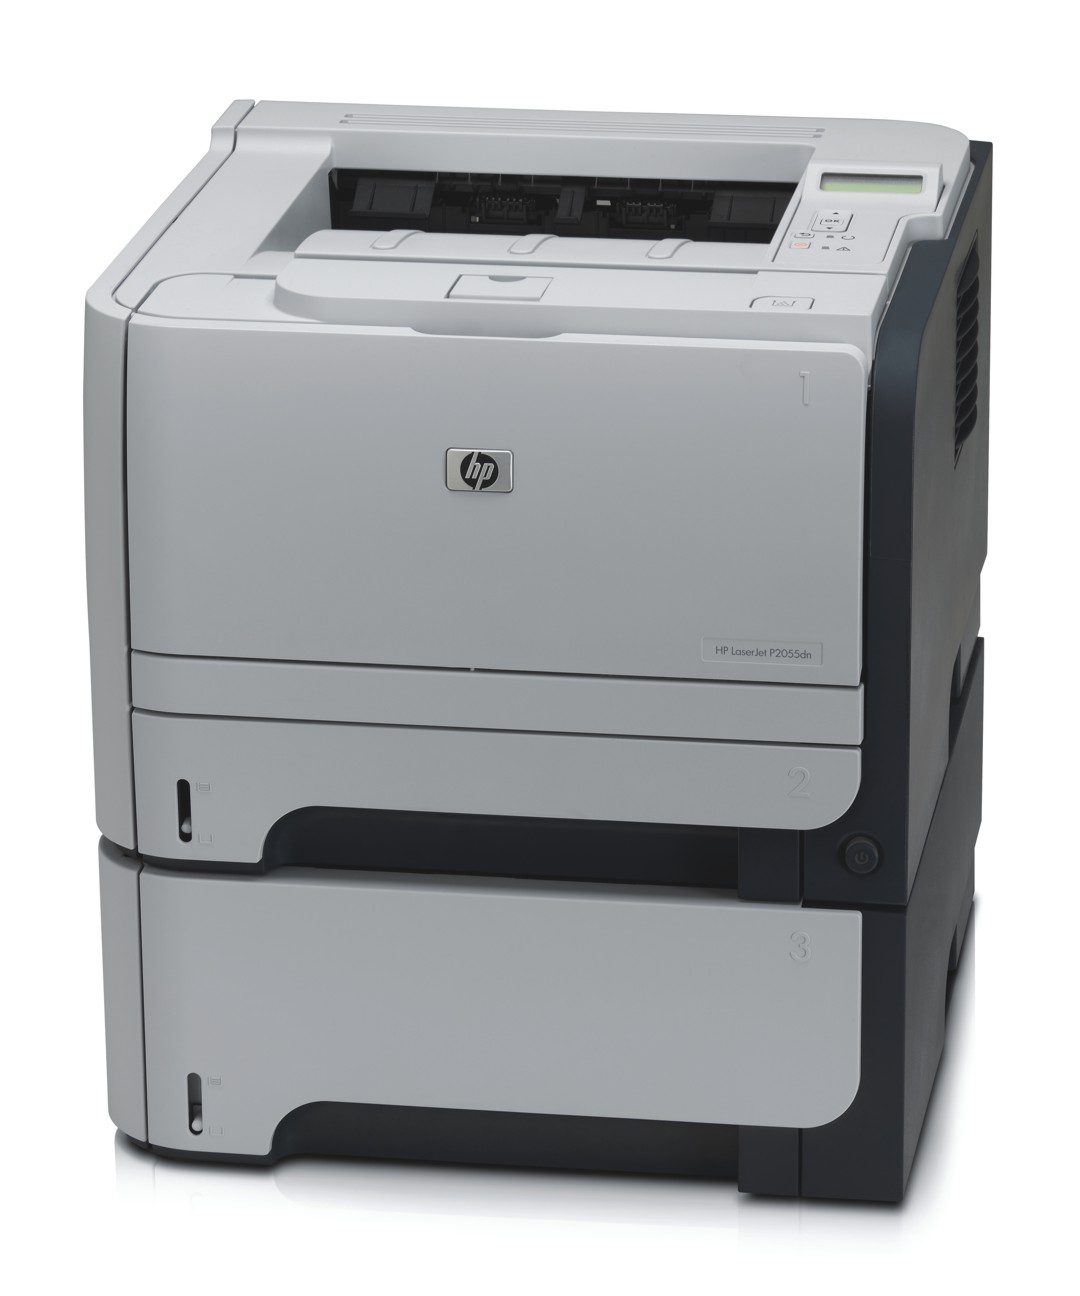 HP LaserJet P2010 series